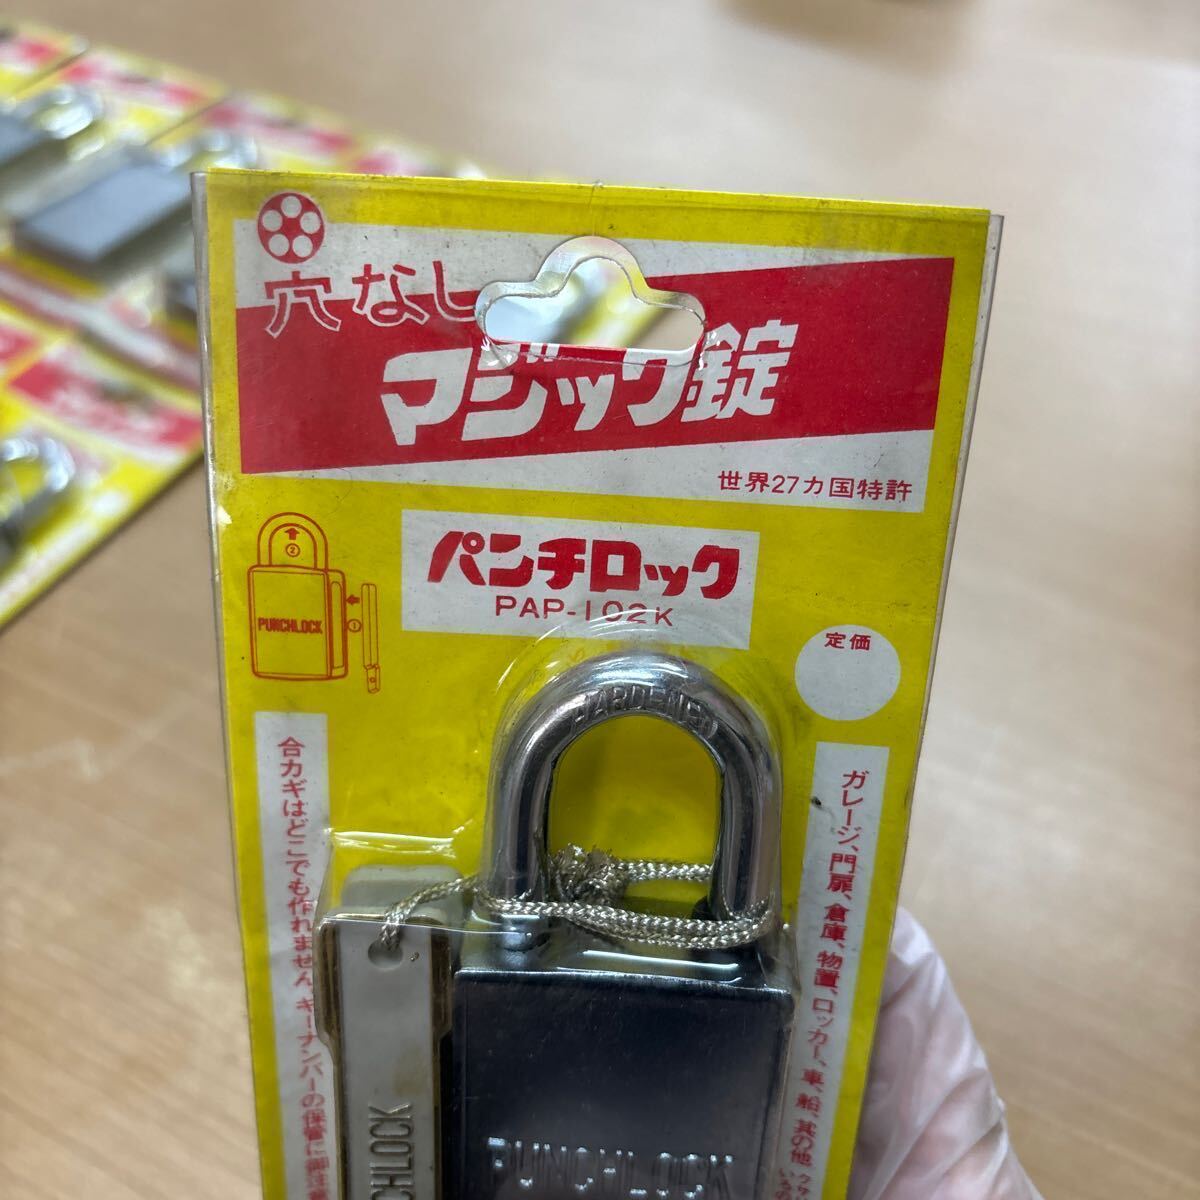 TA-632☆60サイズ☆パンチロック 穴なしマジック錠 PAP-102K 鍵穴のない南京錠 磁気操作錠 の画像4